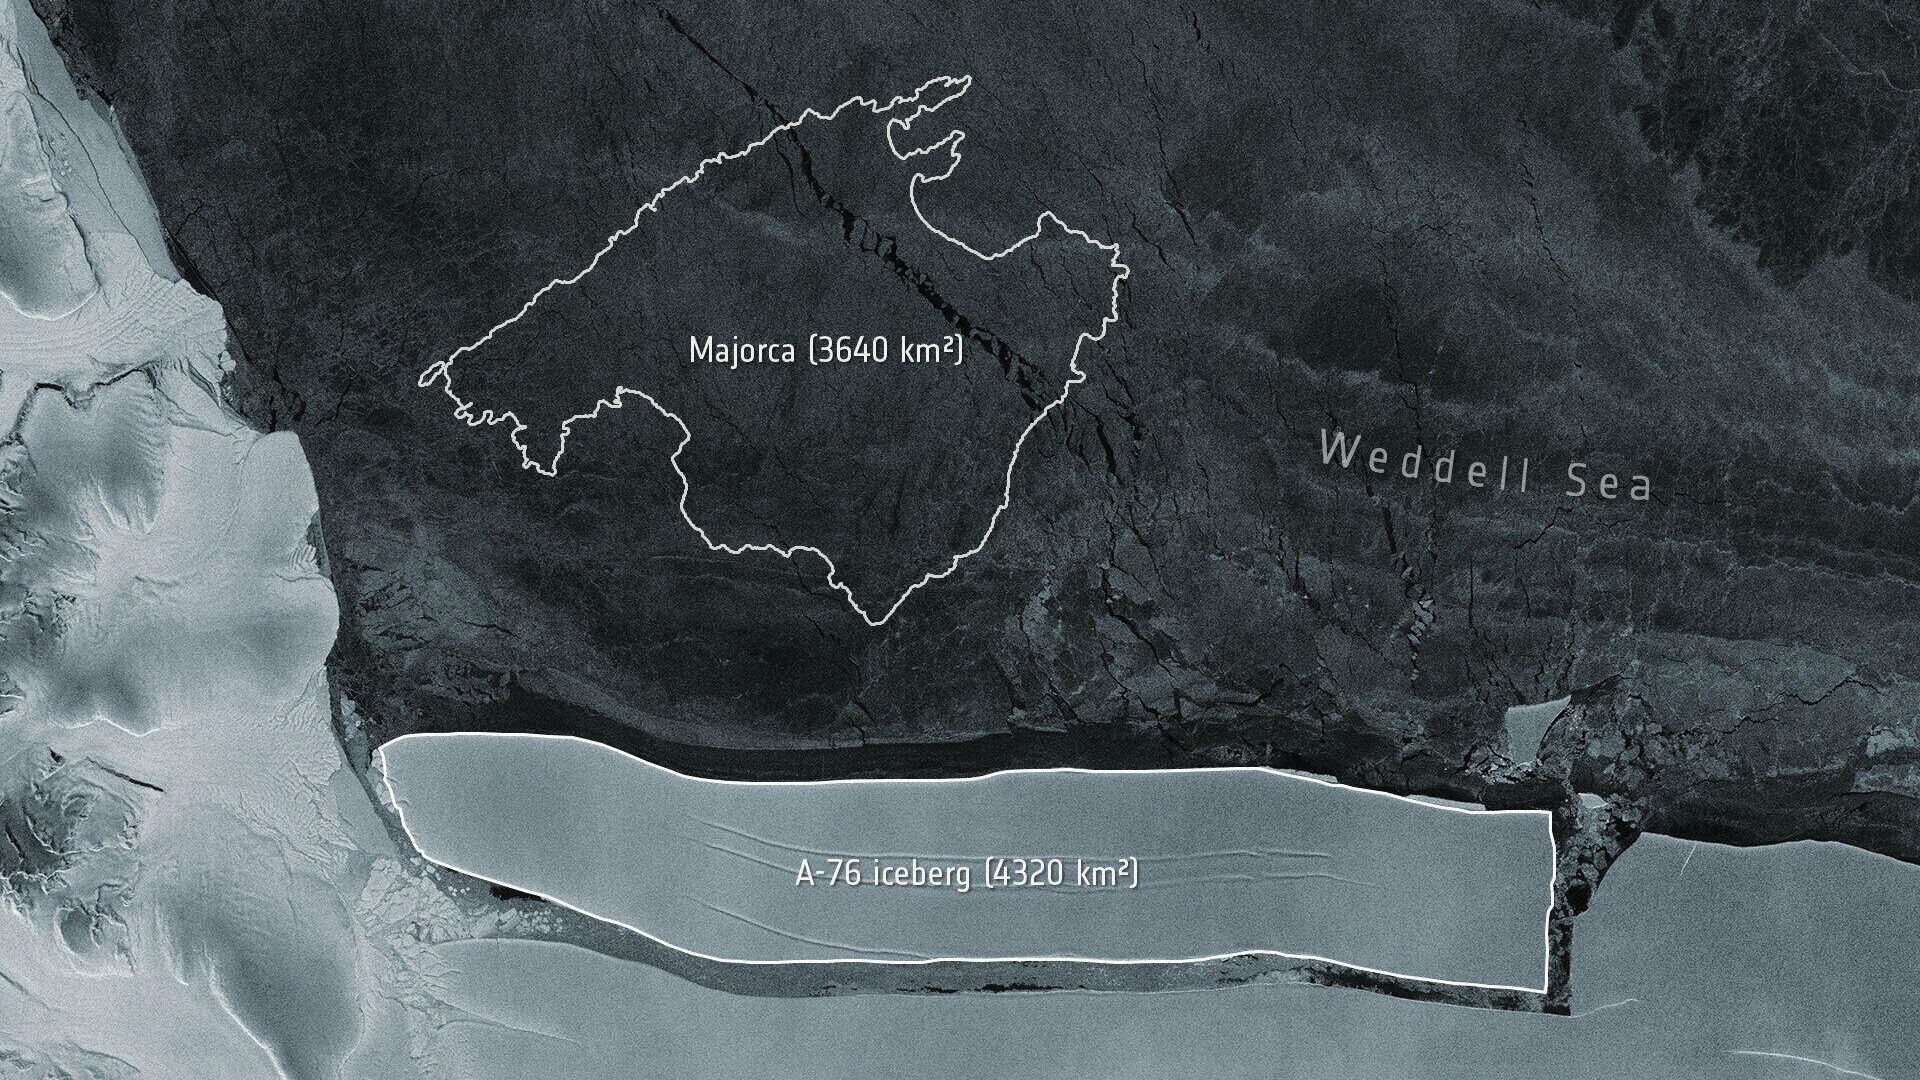 Сравнительные размеры острова Мальорка и айсберга А-76 - РИА Новости, 1920, 19.05.2021